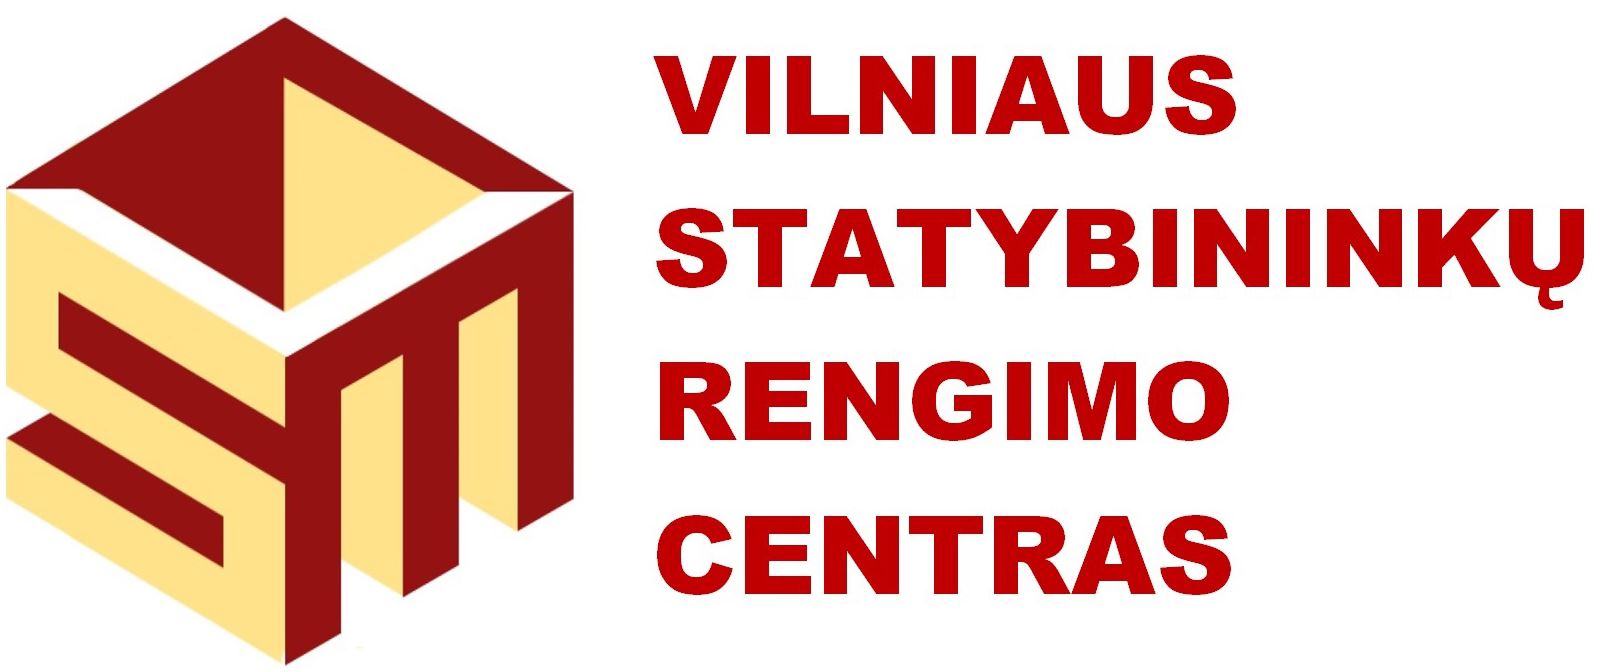 Vilniaus statybininkų rengimo centras